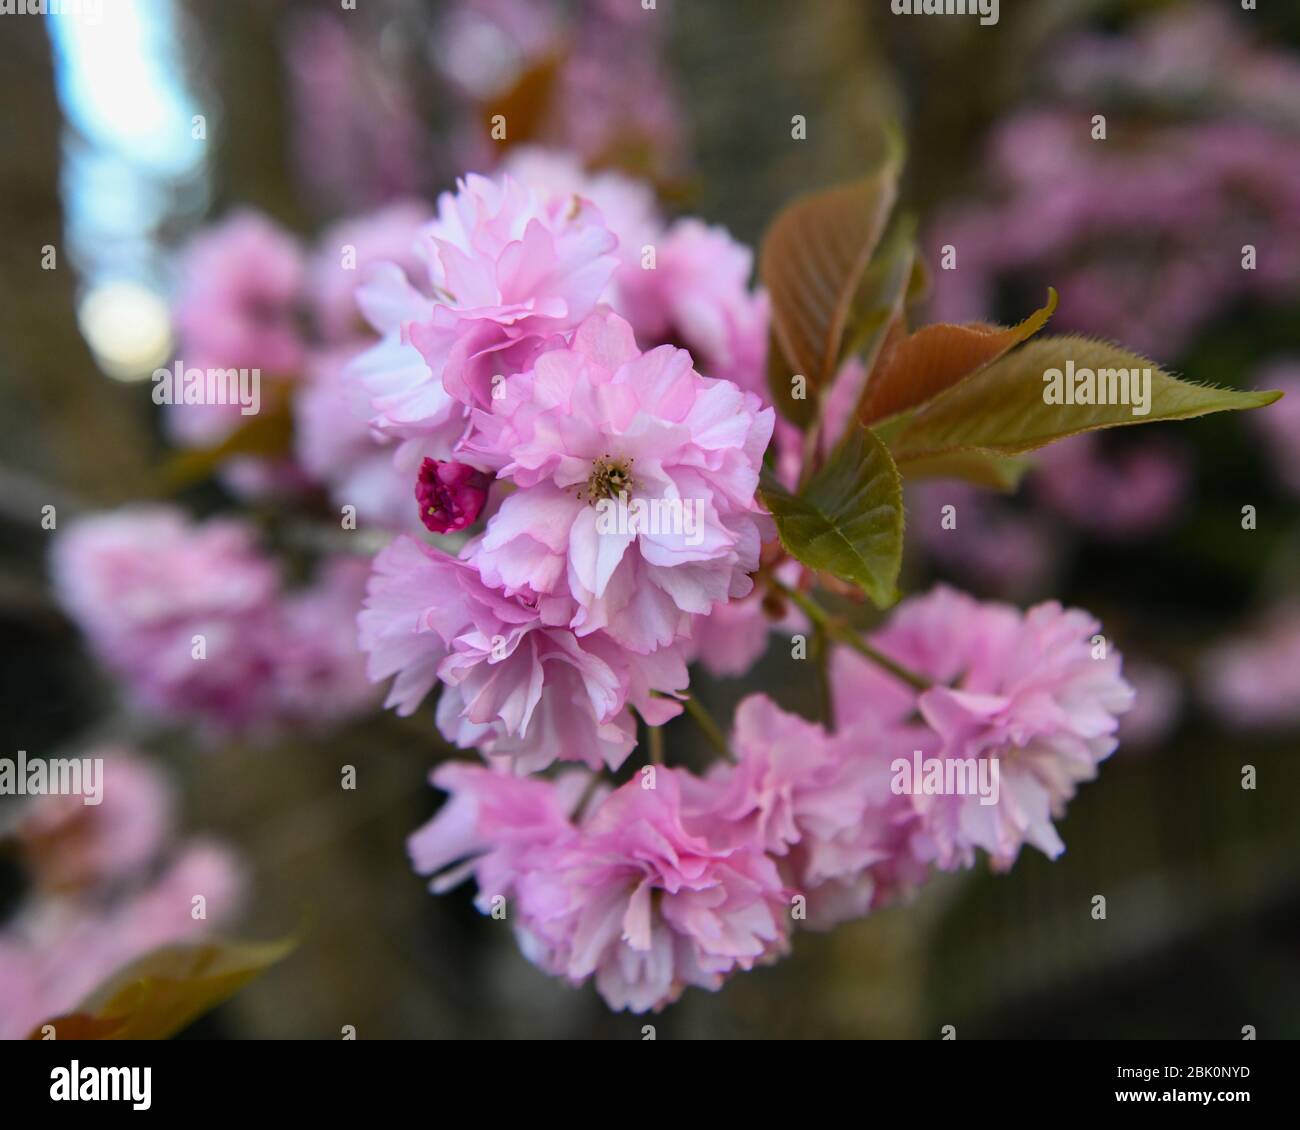 Kirschbaumblüten - Prunus serrulata Blume - Doppelkirschenbaum Blüte - Kwanzan Baum - Japanischer Kirschbaum aka. Orientalische Kirschbäume Stockfoto